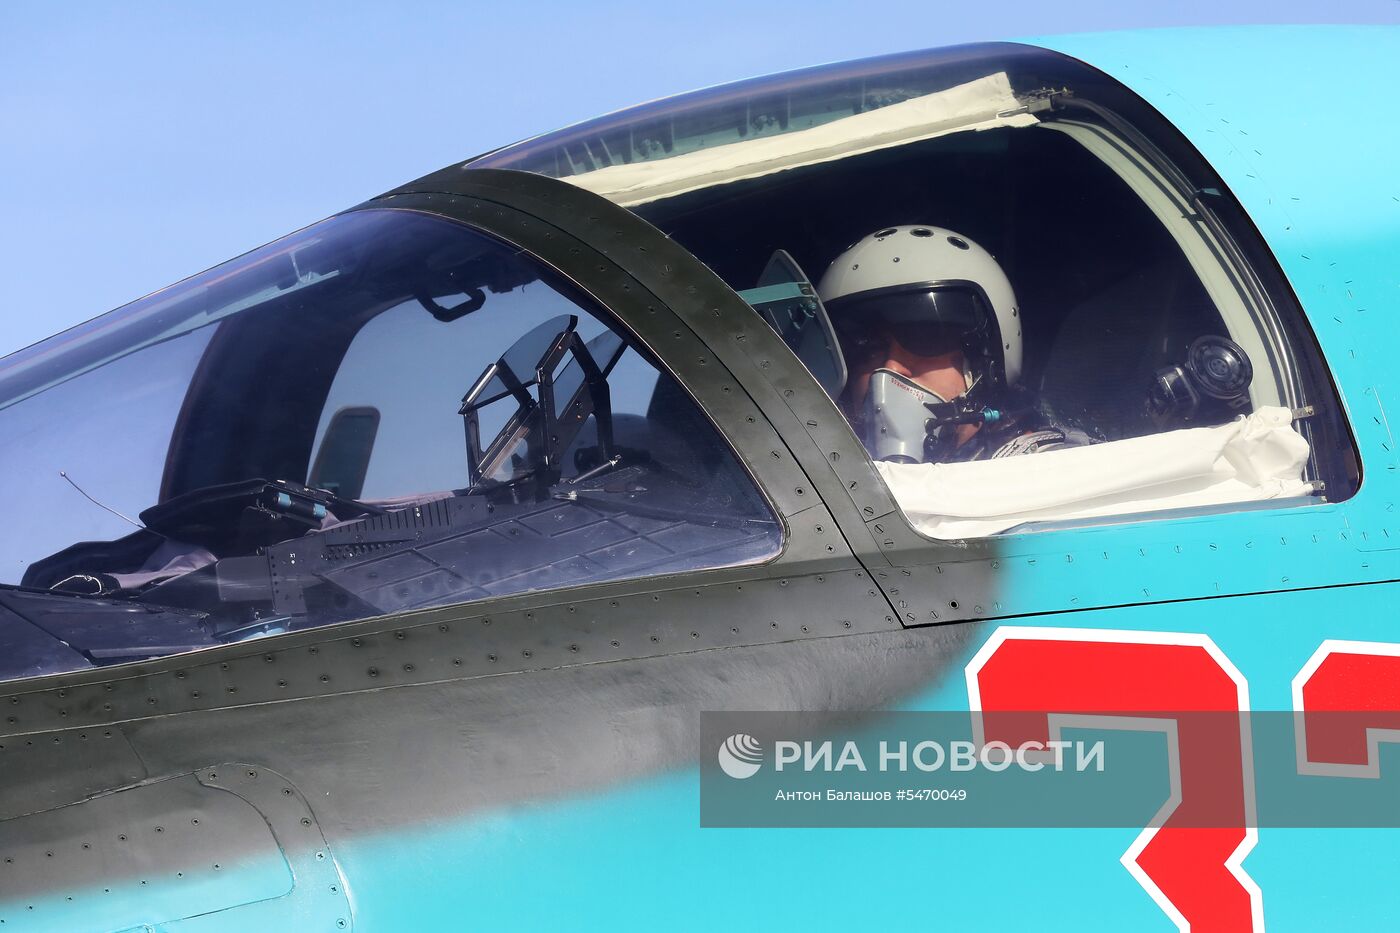 Соревнования военных летчиков "Авиадартс-2018" в Приморье